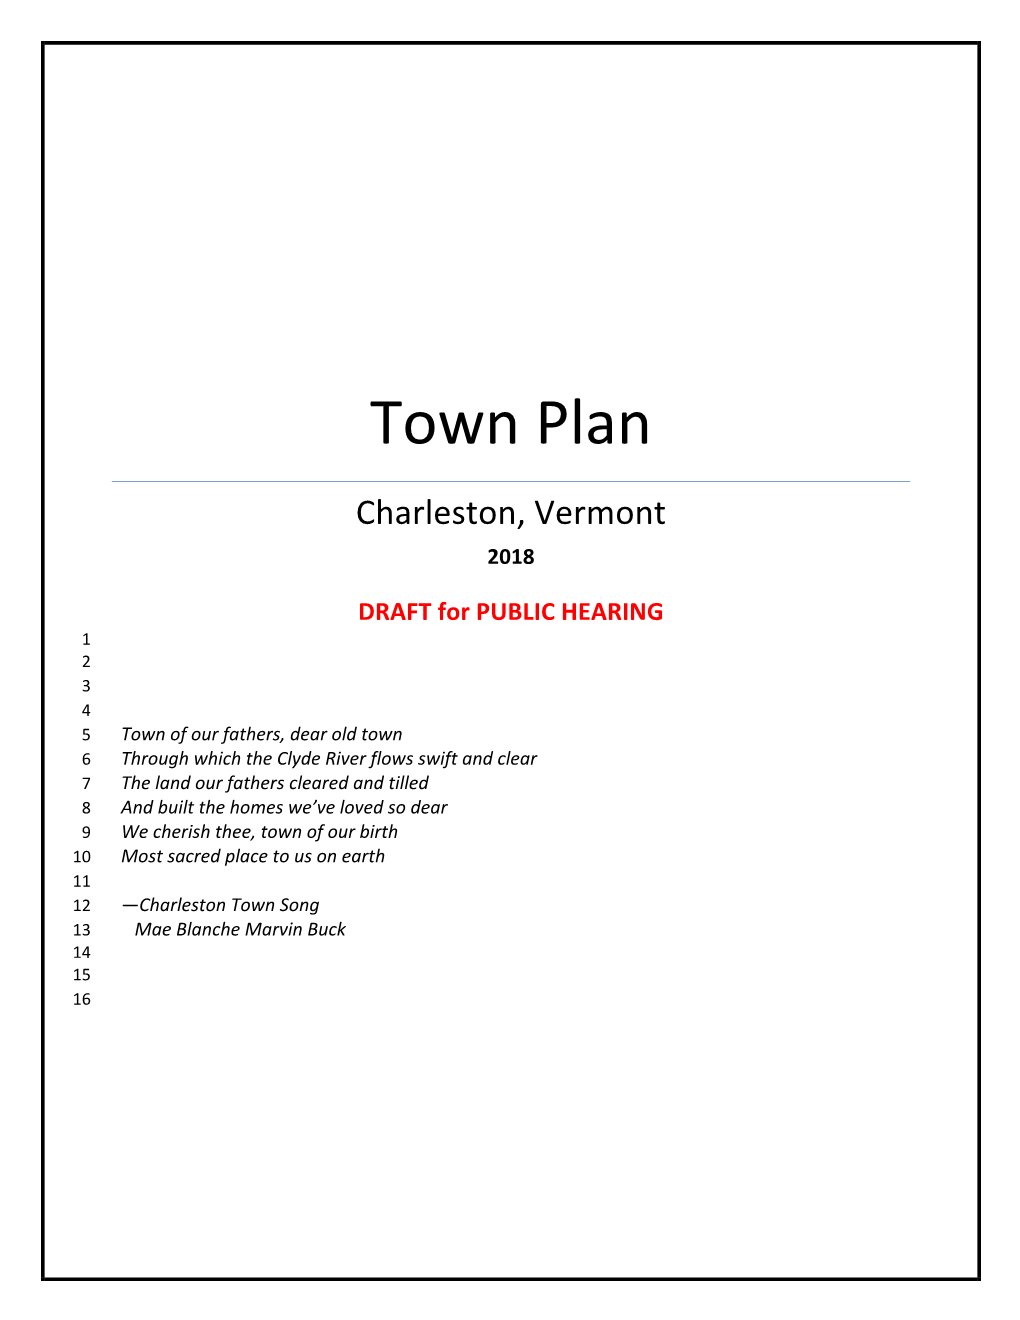 Charleston 2018 Town Plan